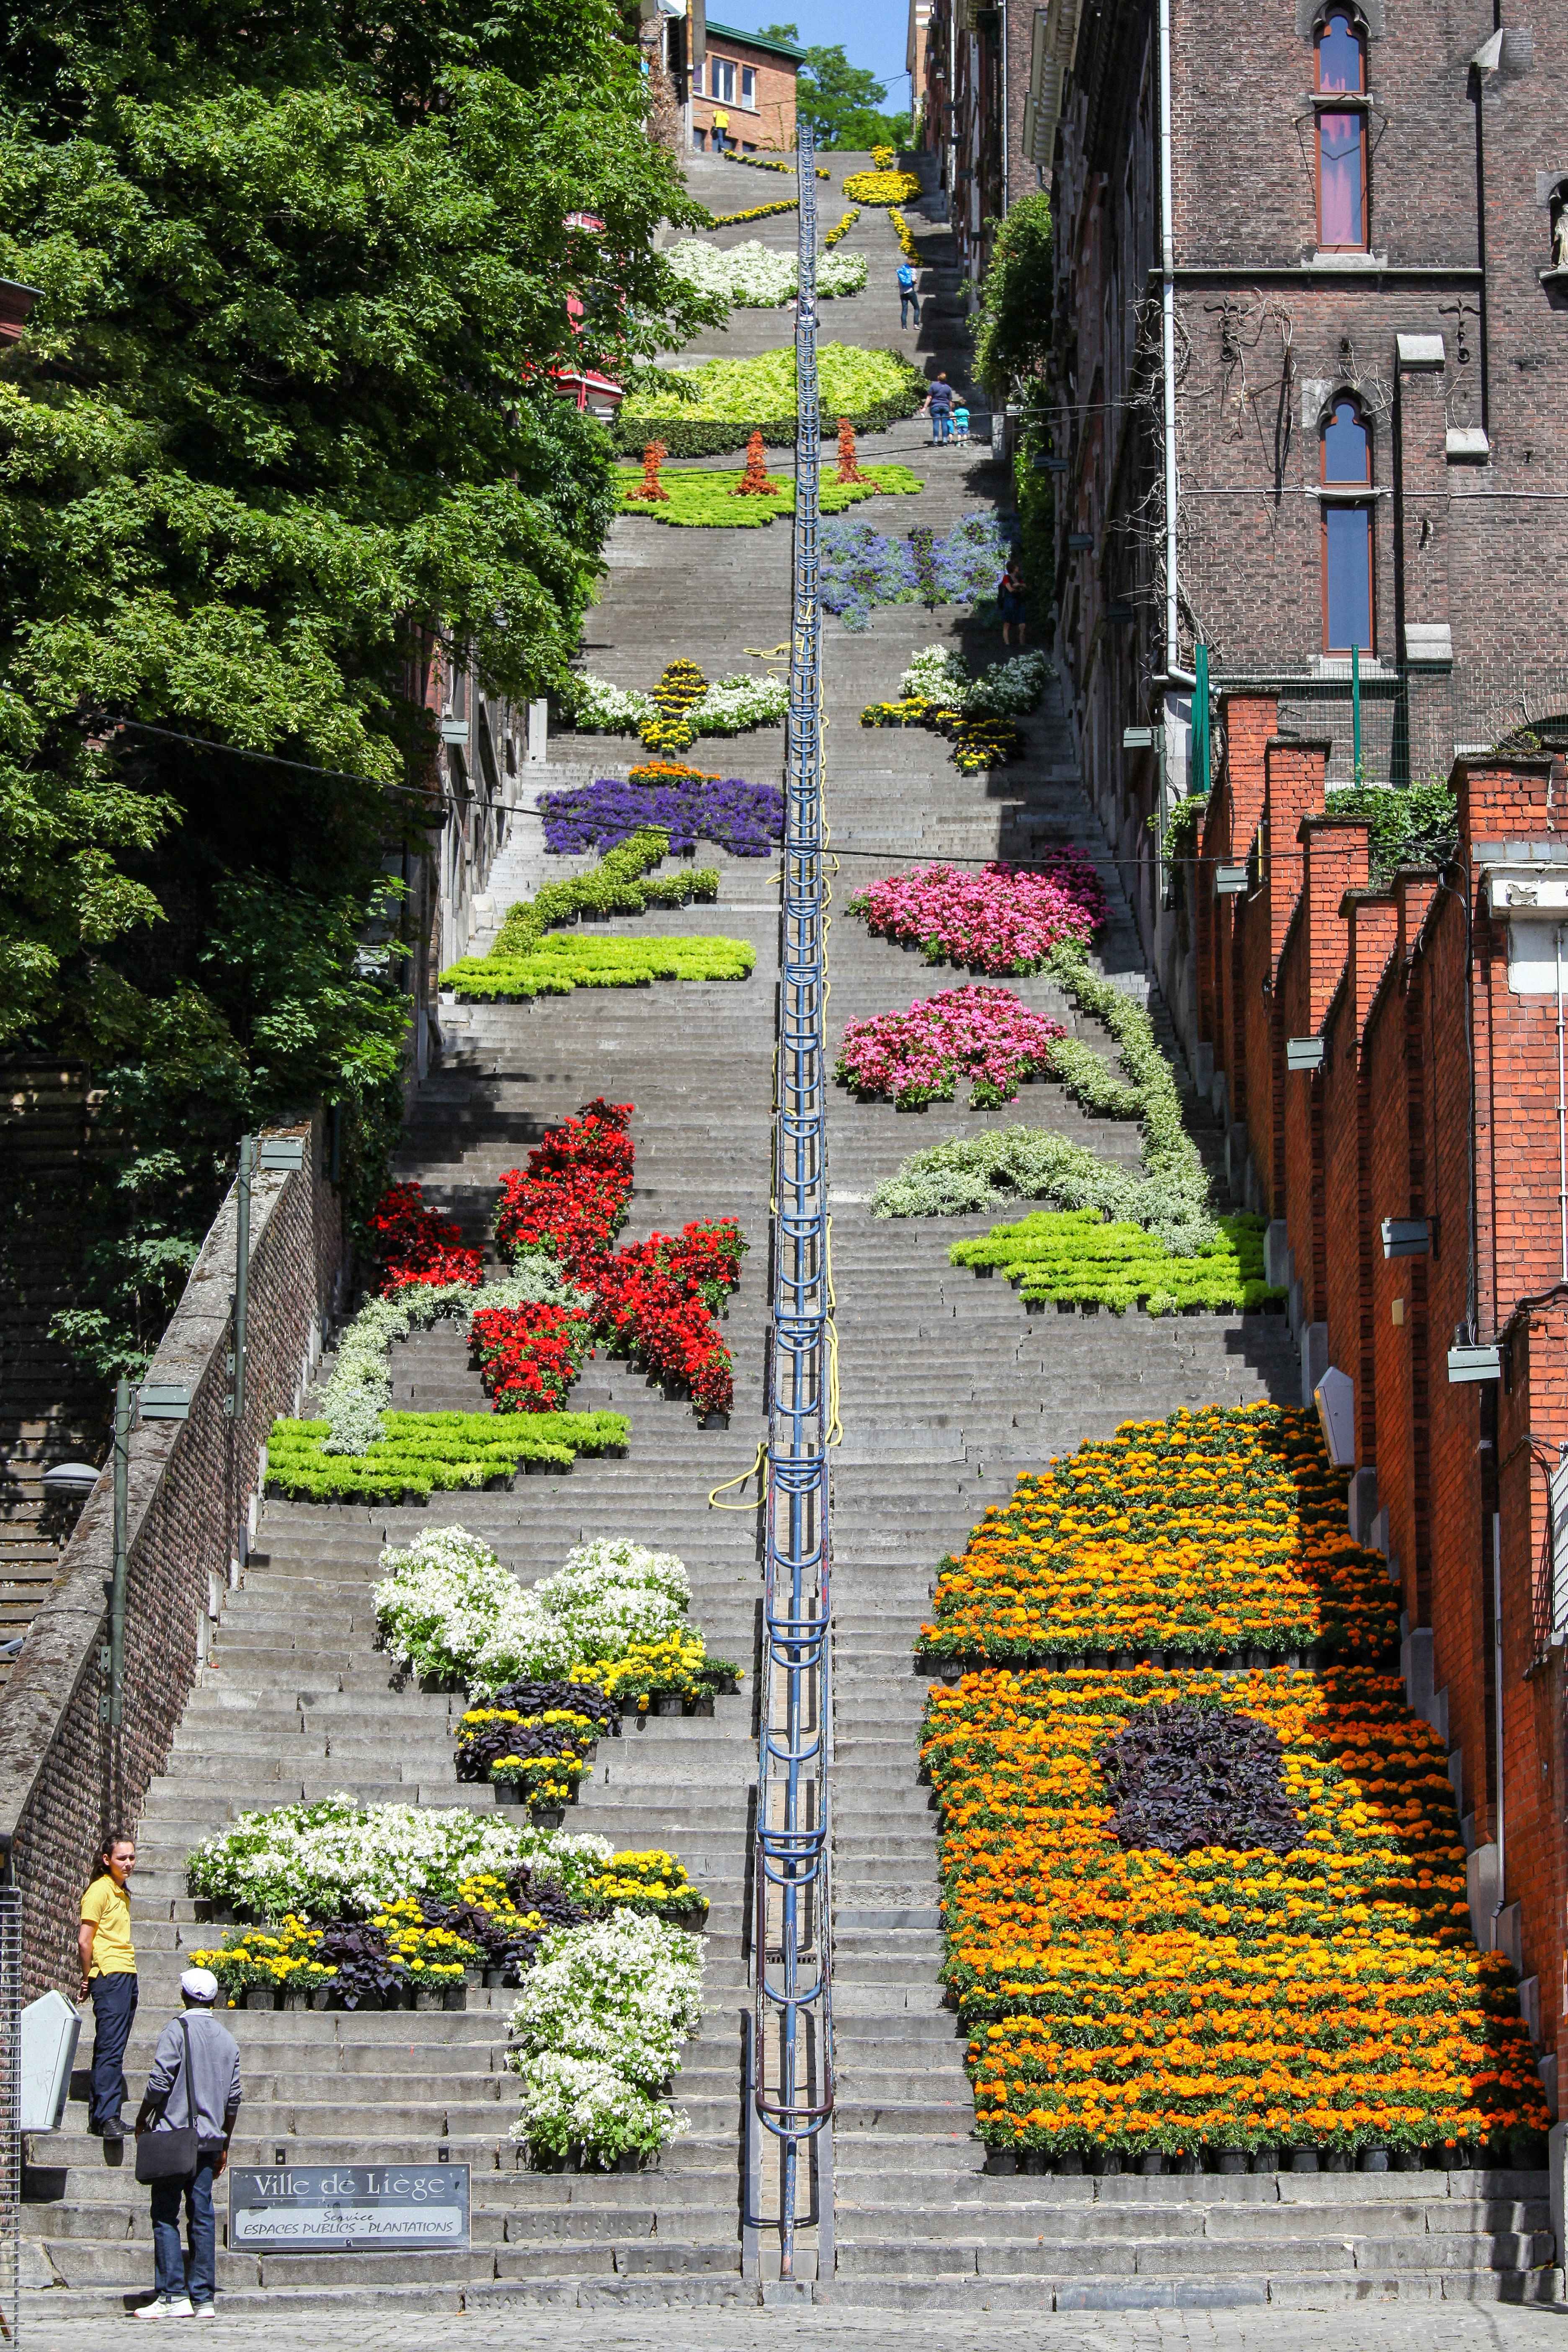 Admirez les milliers de fleurs disposées sur la montagne de Bueren à Liège - Wallonie insolite